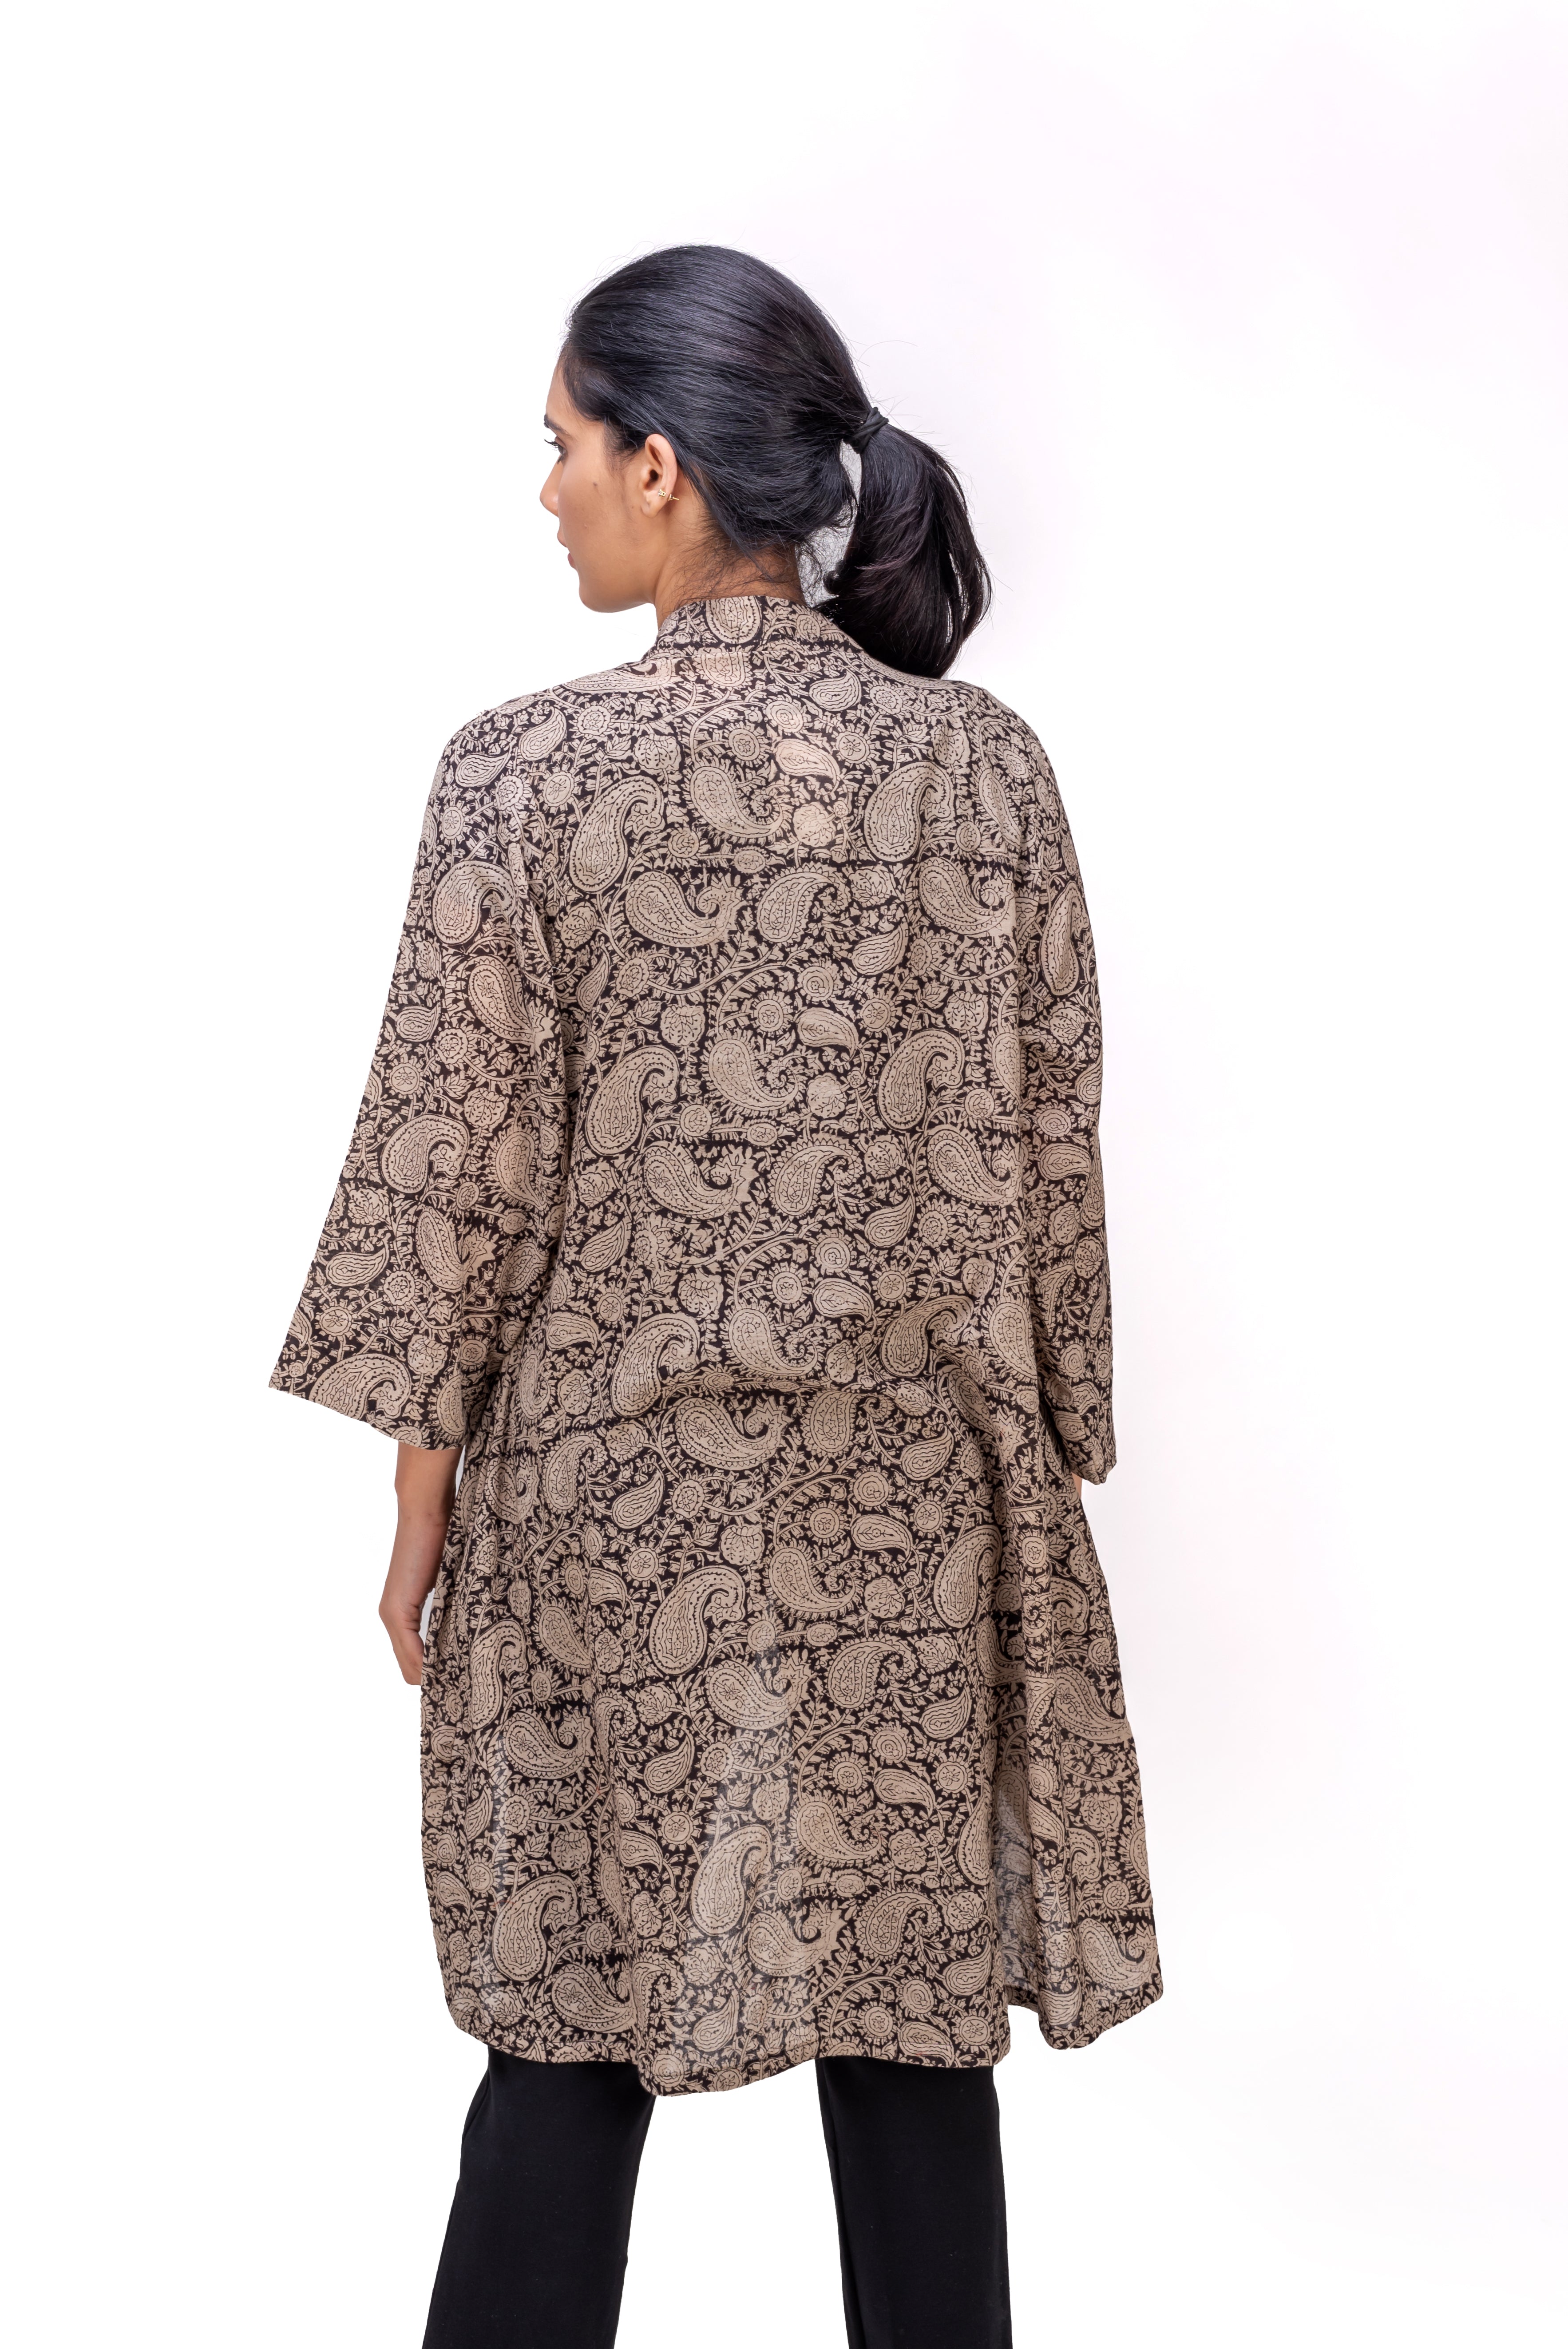 513-117 Whitelotus "Su" Women's coat Kimono